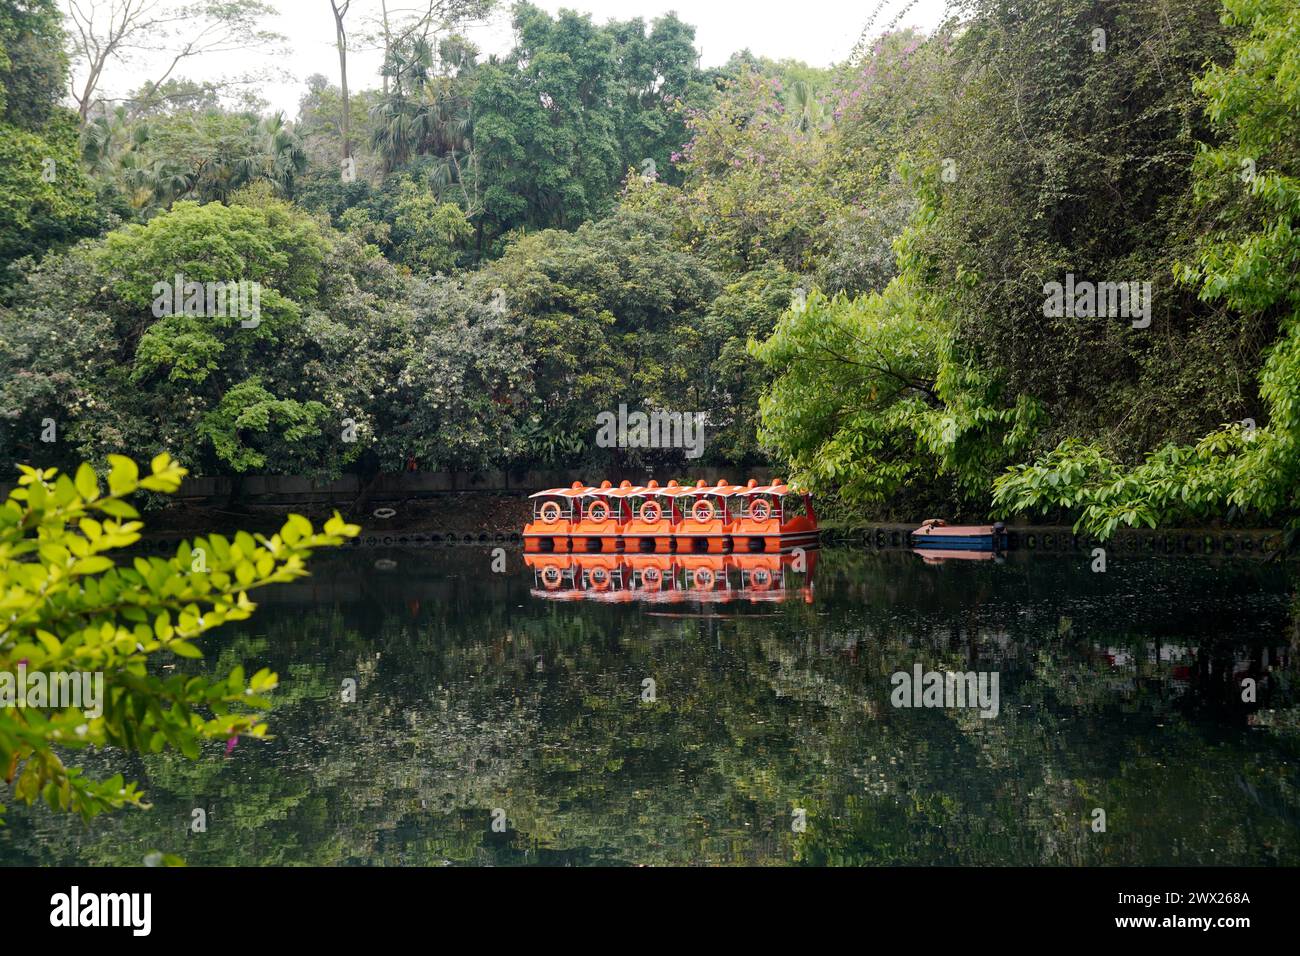 Malerische Aussicht auf einen Fluss mit Booten in einem grünen Park Stockfoto